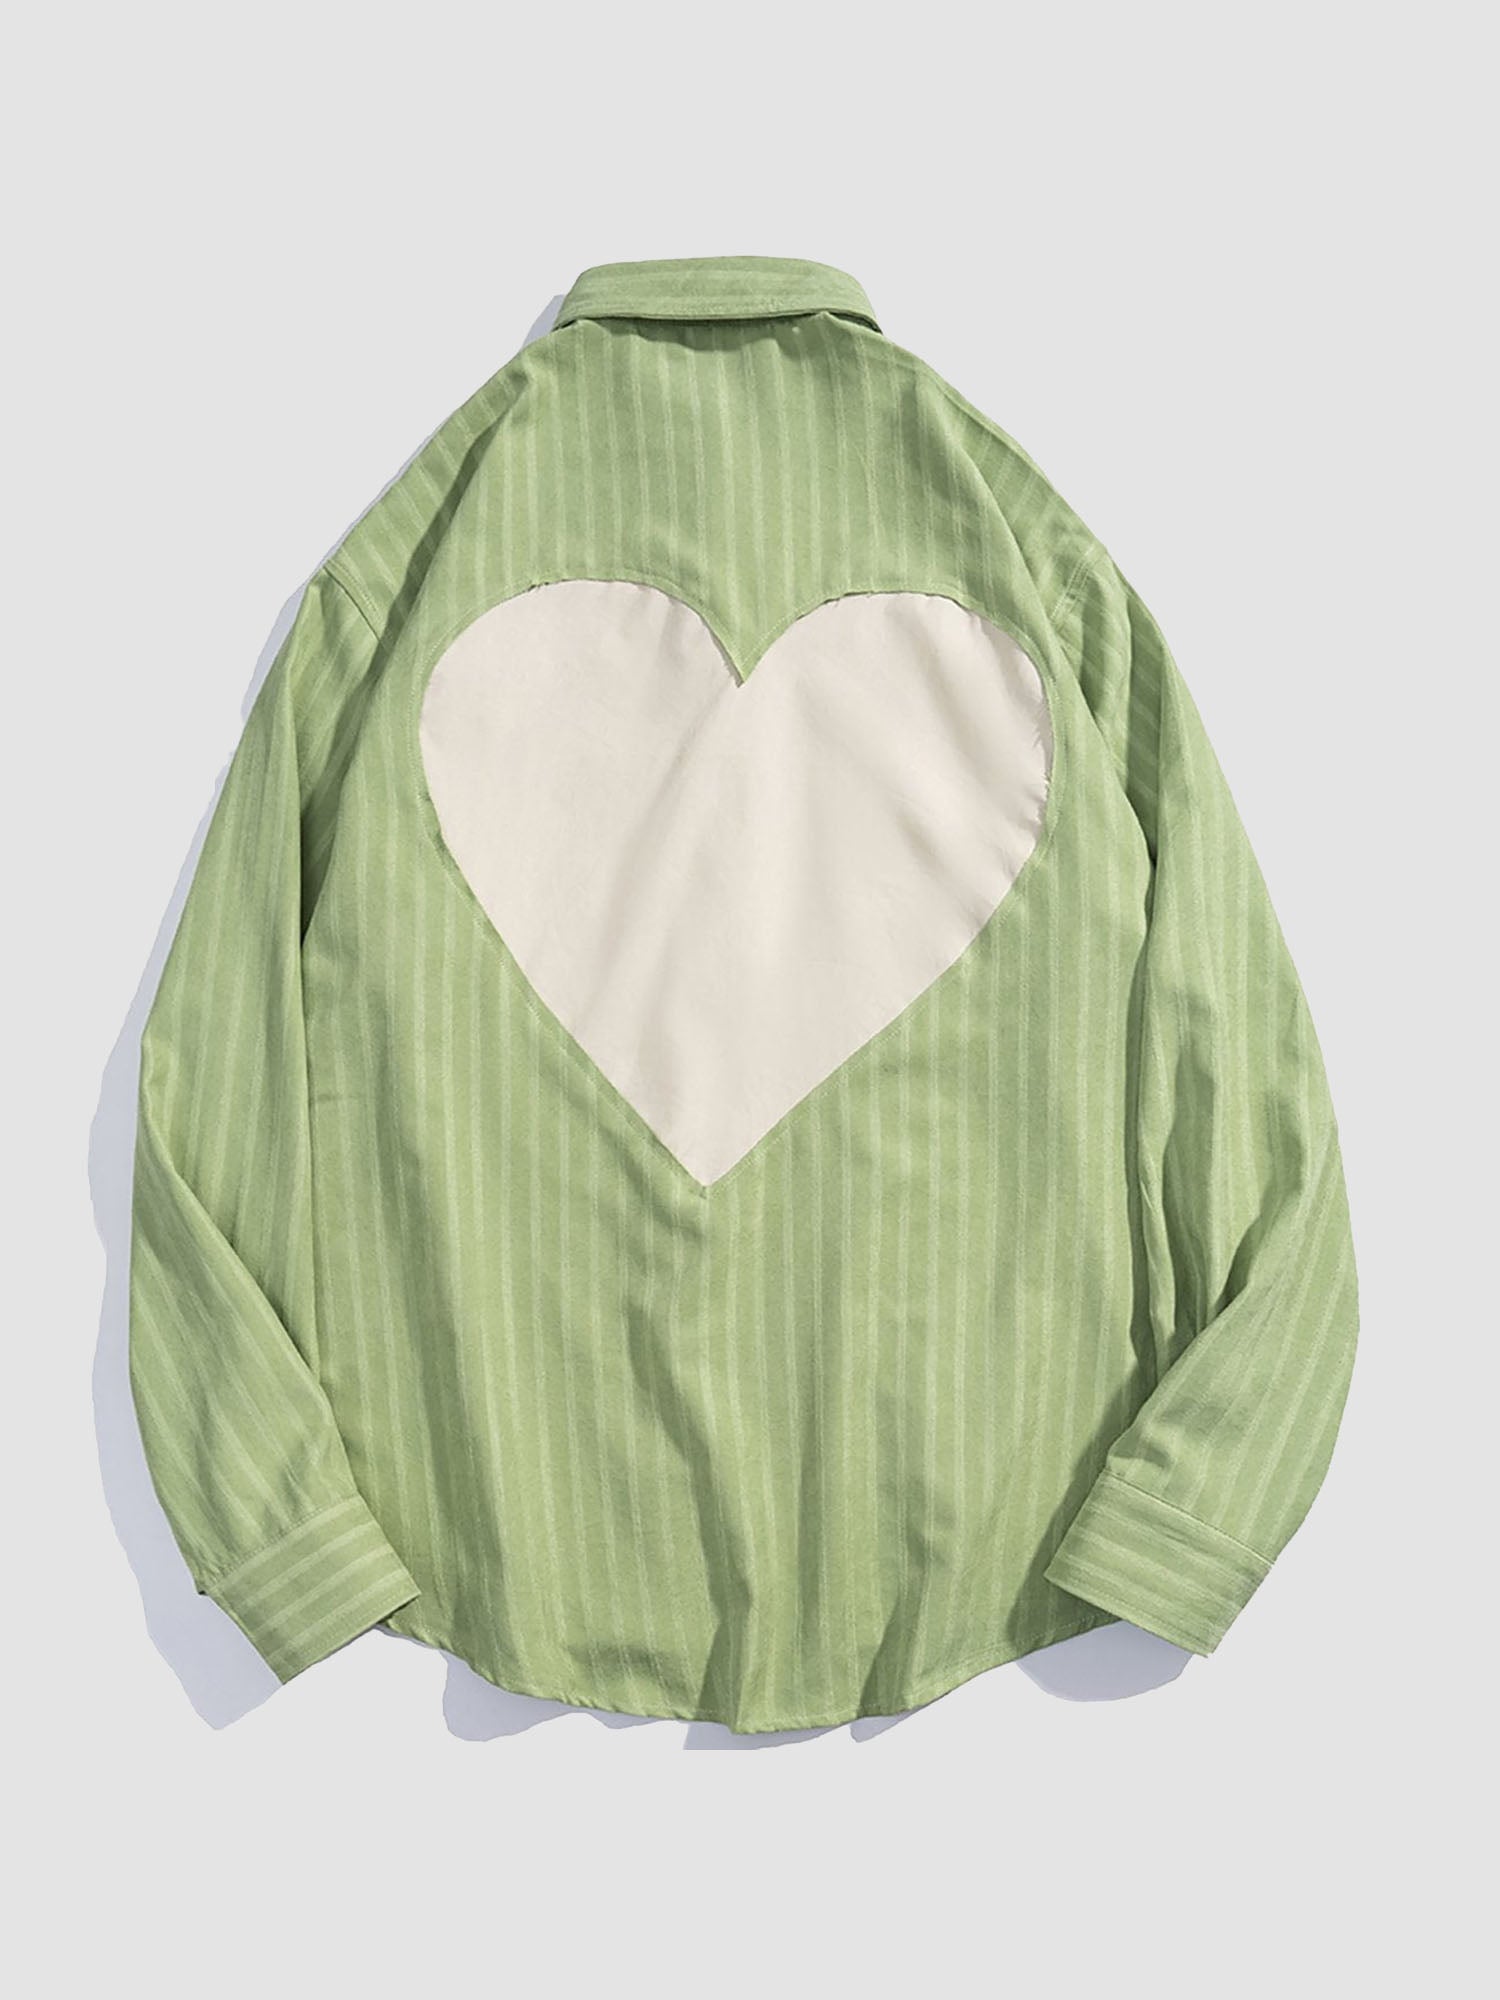 JUSTNOTAG Hollow Heart Long-sleeved Shirts